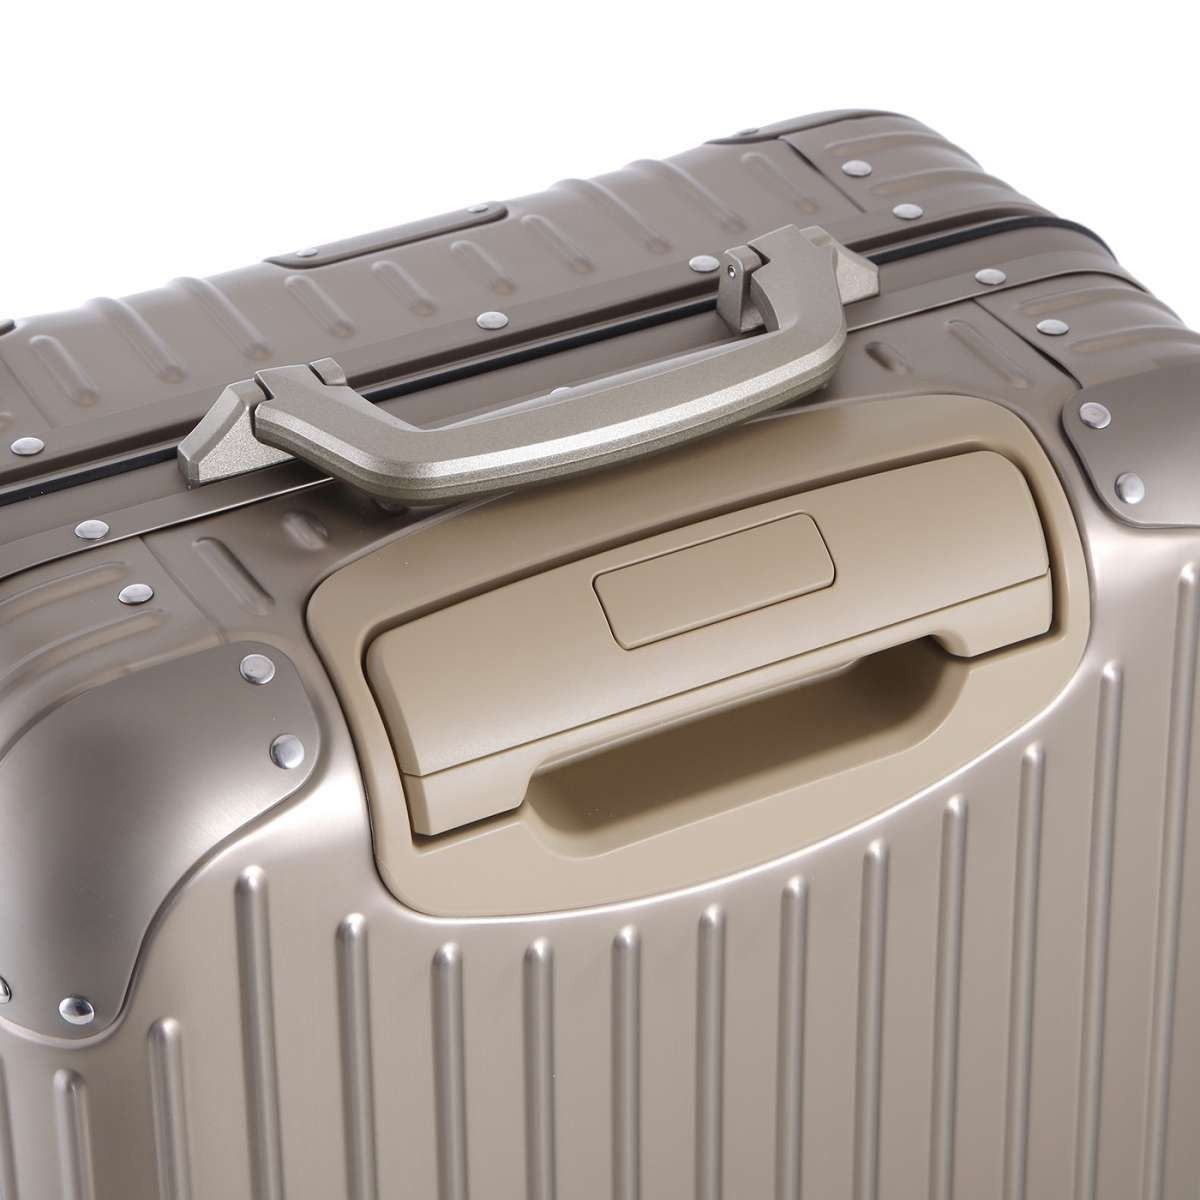 RIMOWA Original Cabin Suitcase in Titanium - Aluminium - Unisex